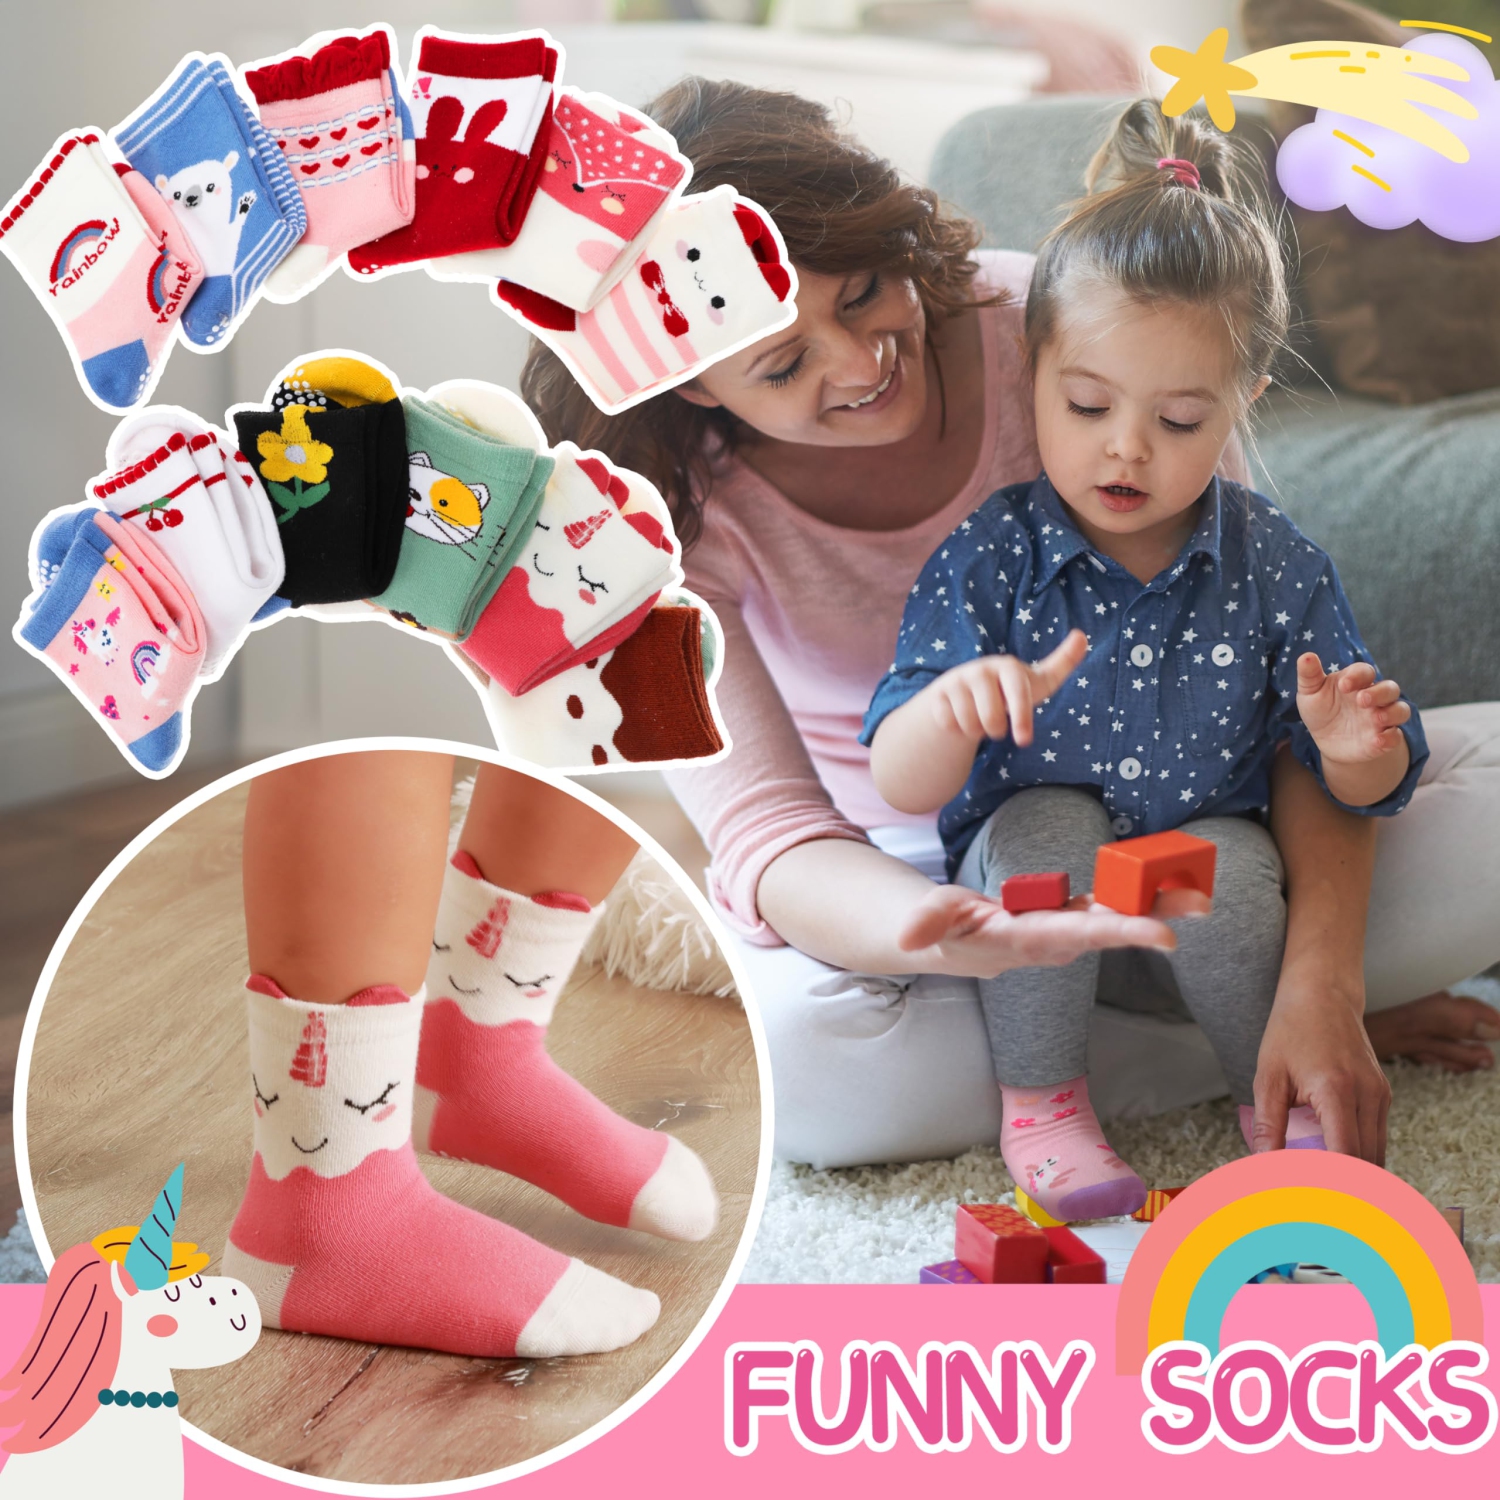 Baby Girls Toddlers Grips Socks Kids Non Slip/Anti Skid Unicorn